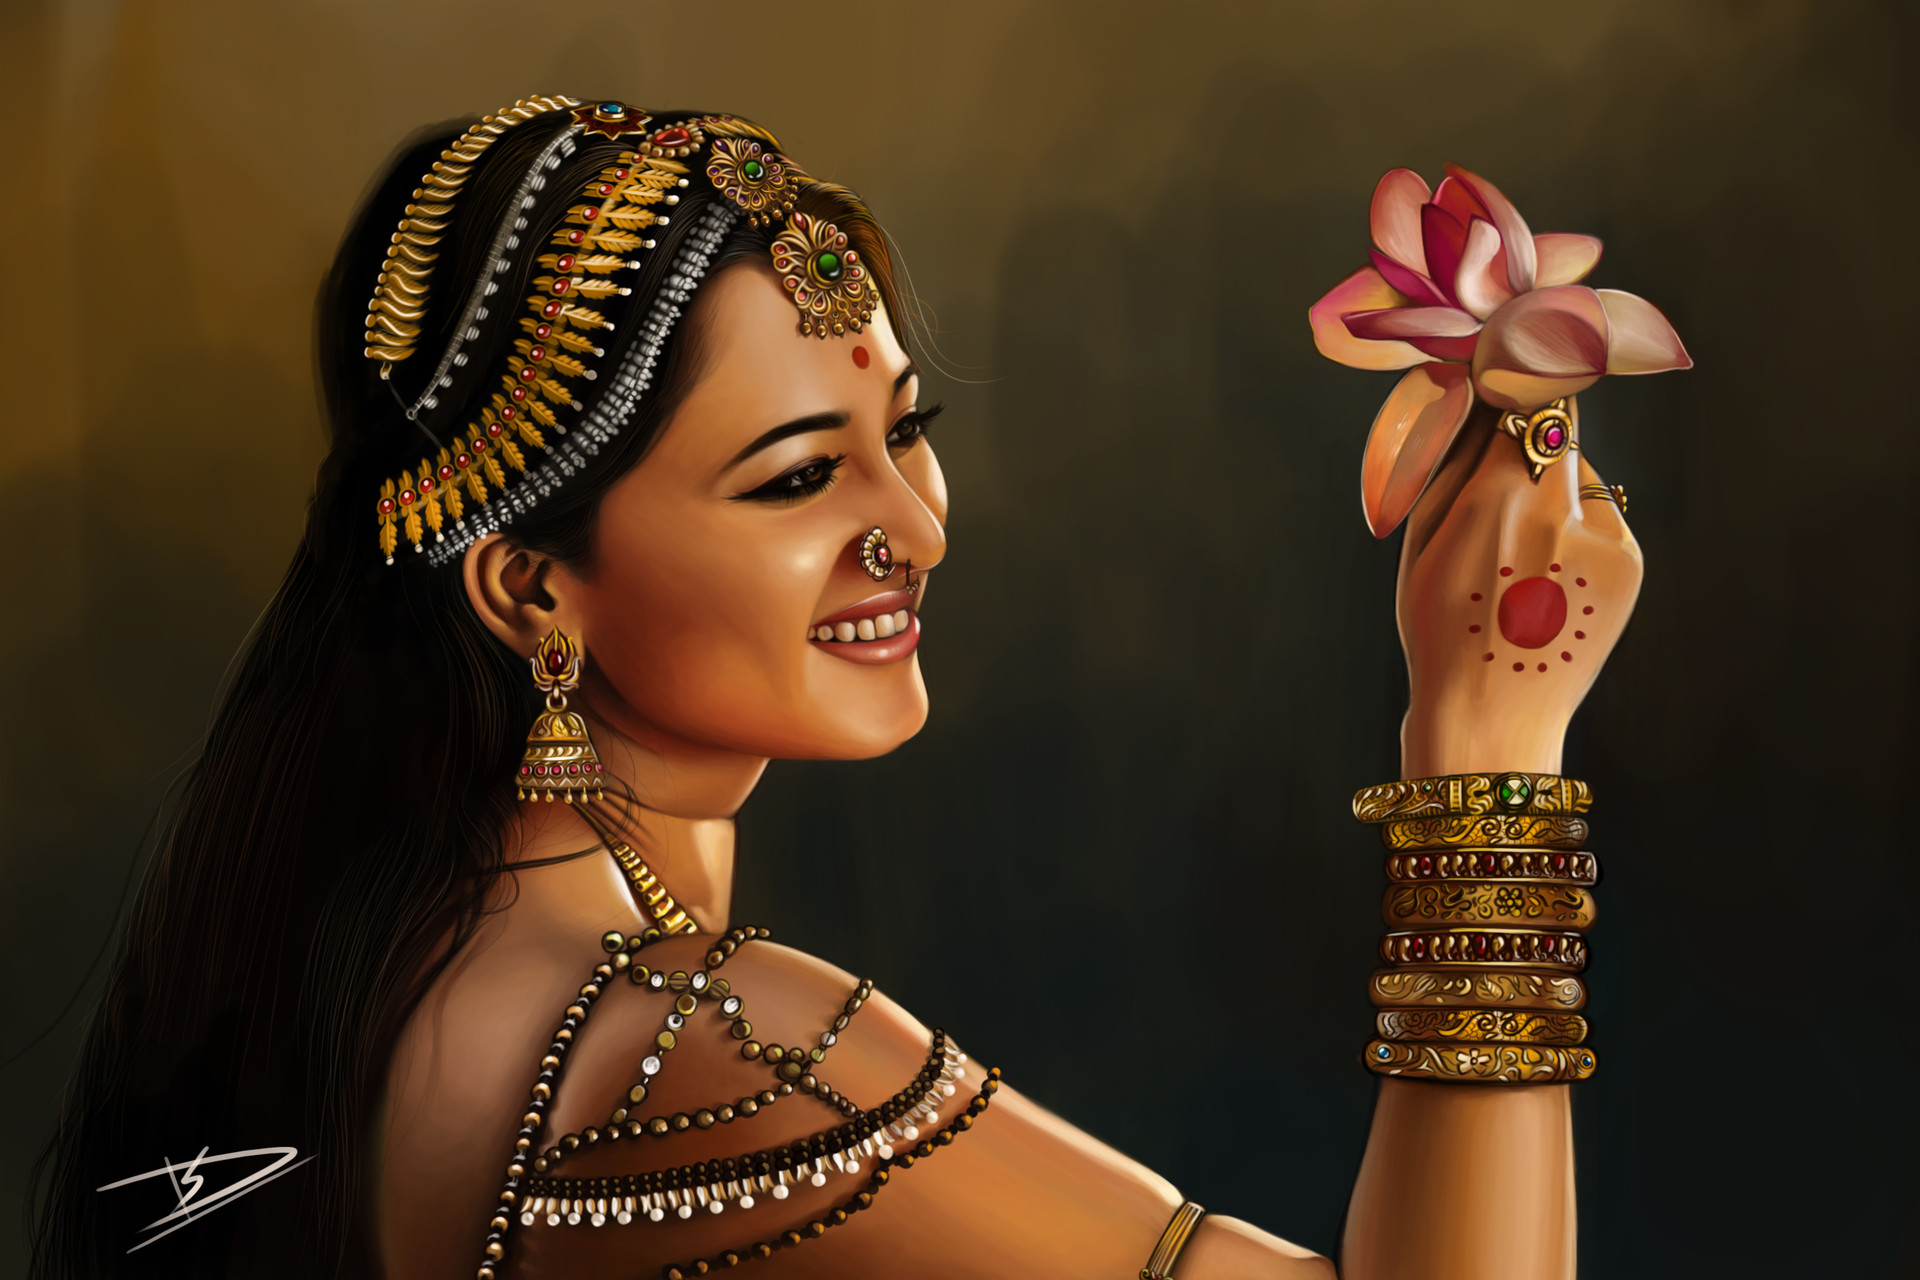 ArtStation - Bahubali actress